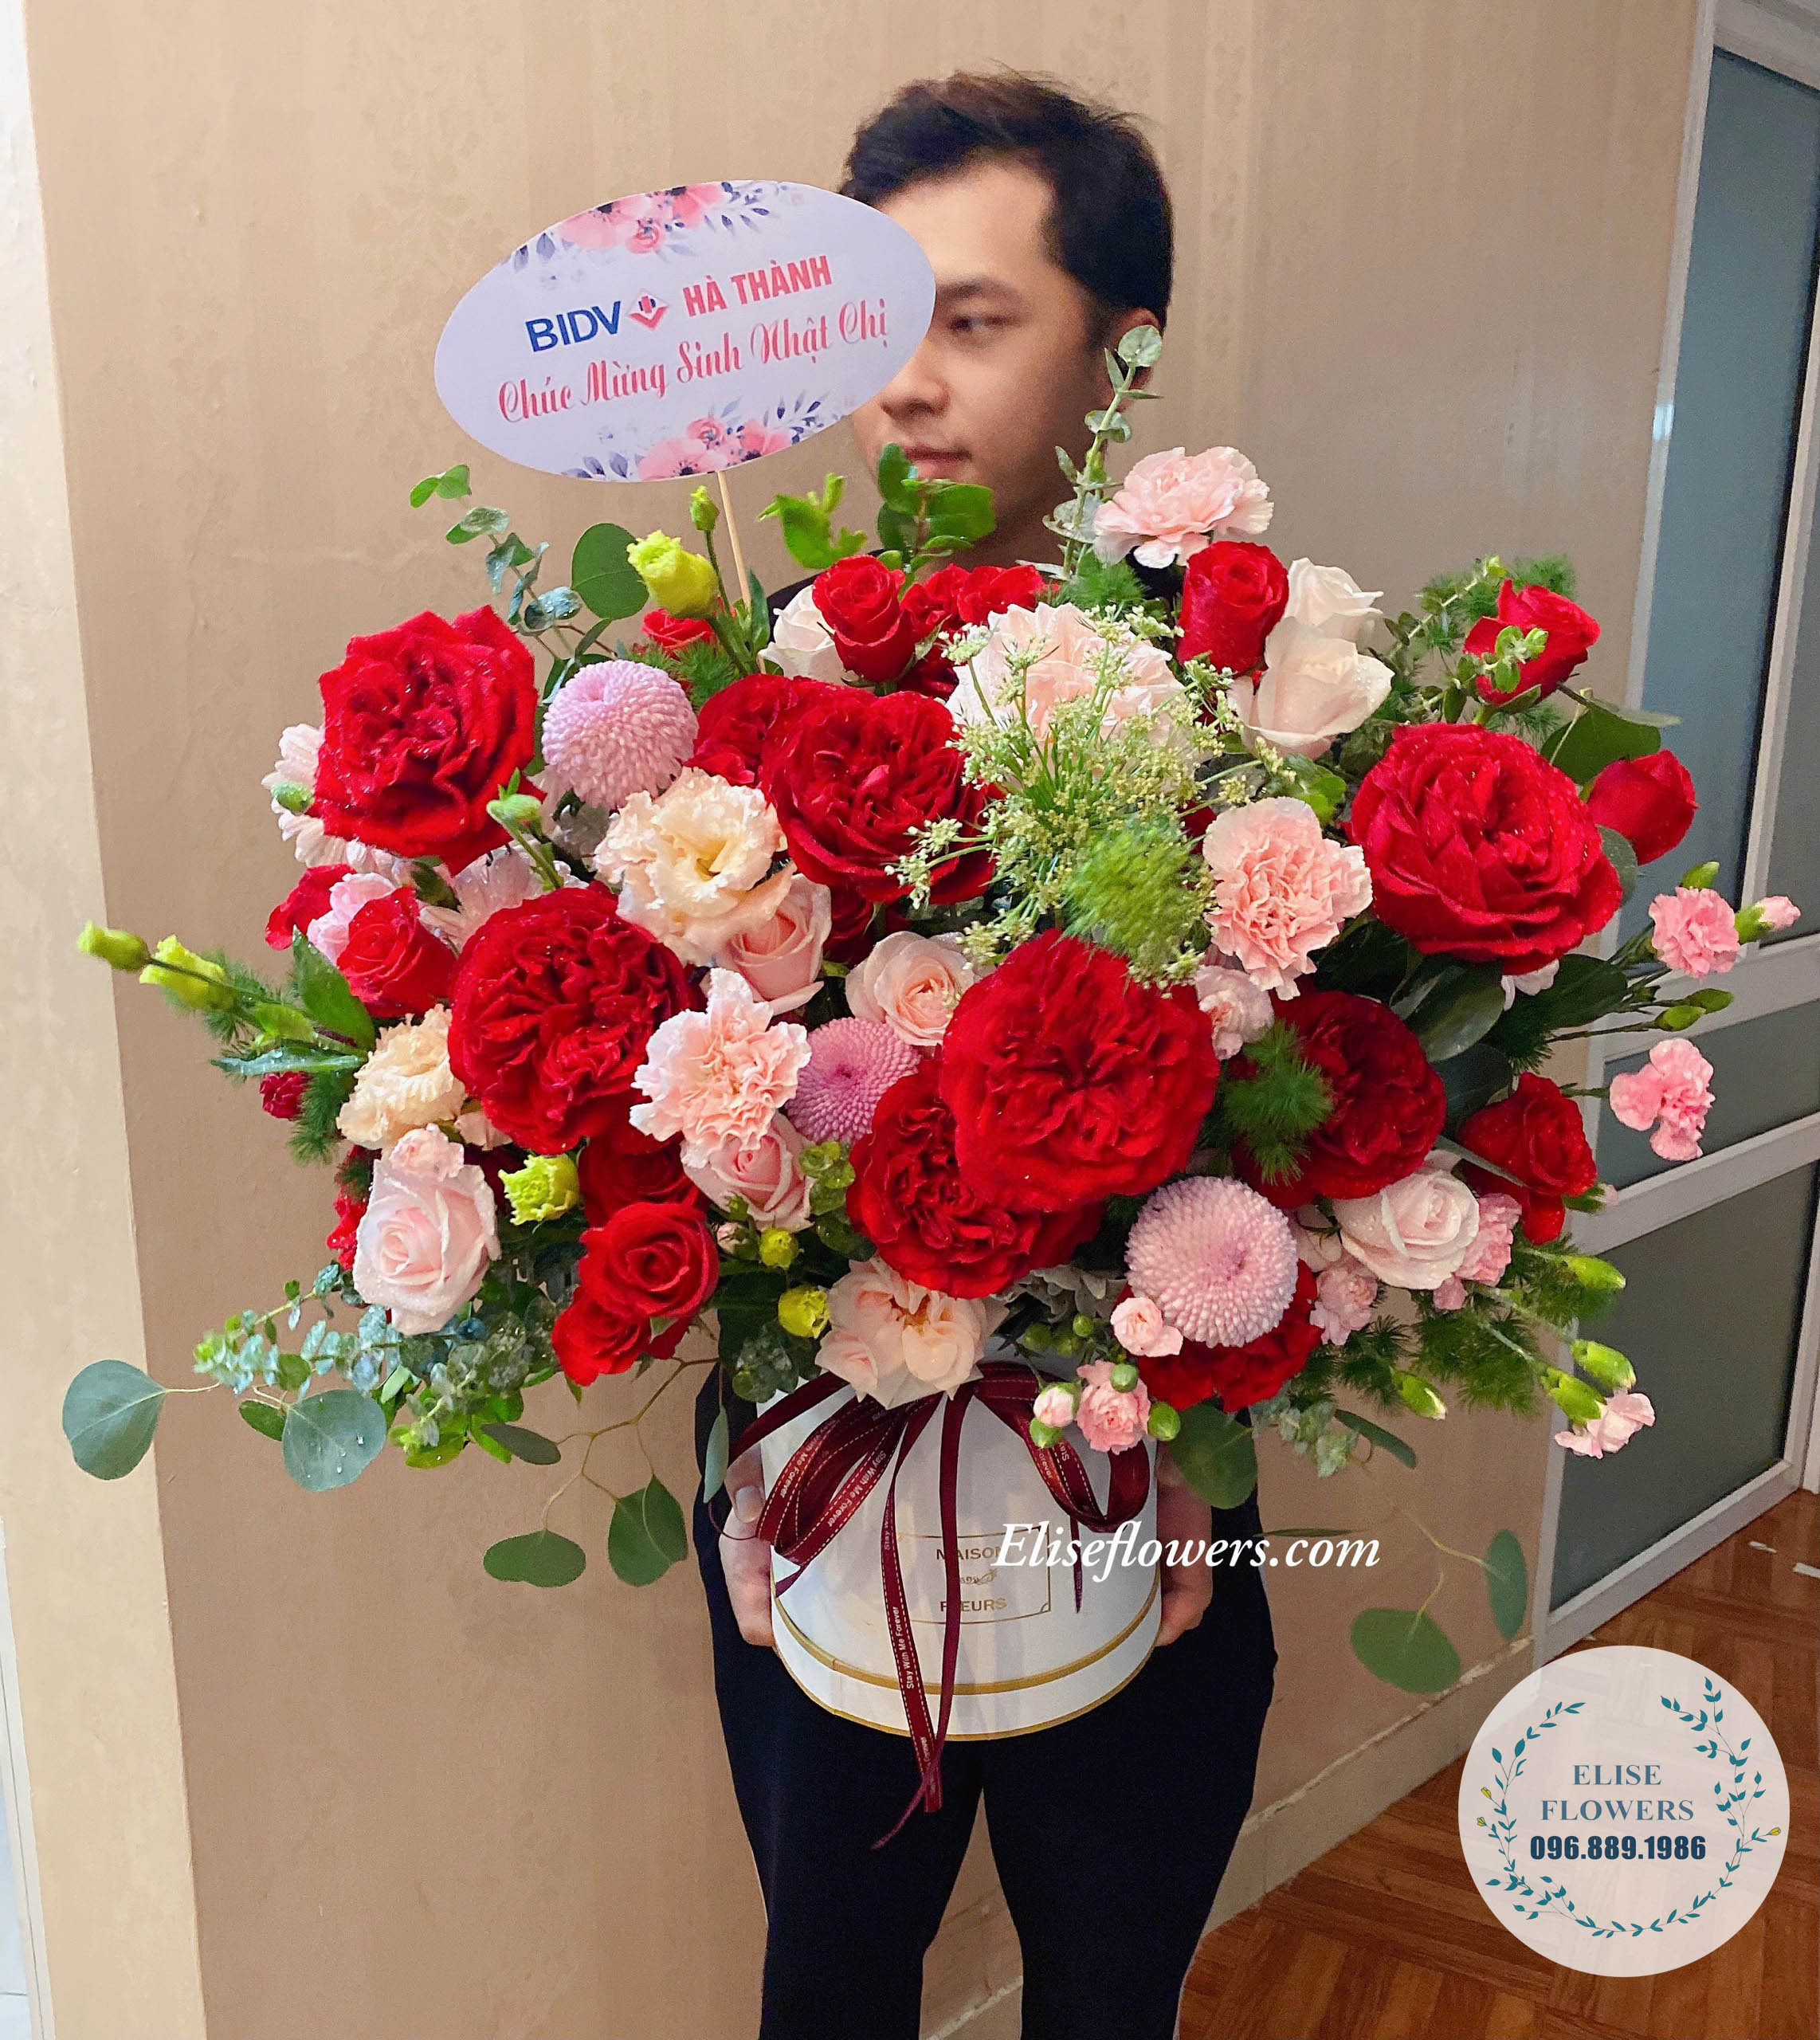 Lẵng hoa chúc mừng sinh nhật hoa tặng sinh nhật bạn gái điện hoa giá rẻ  hoa tặng vợ địa chỉ cửa hàng bán hoa sinh nhật bánh kem sinh nhật giá